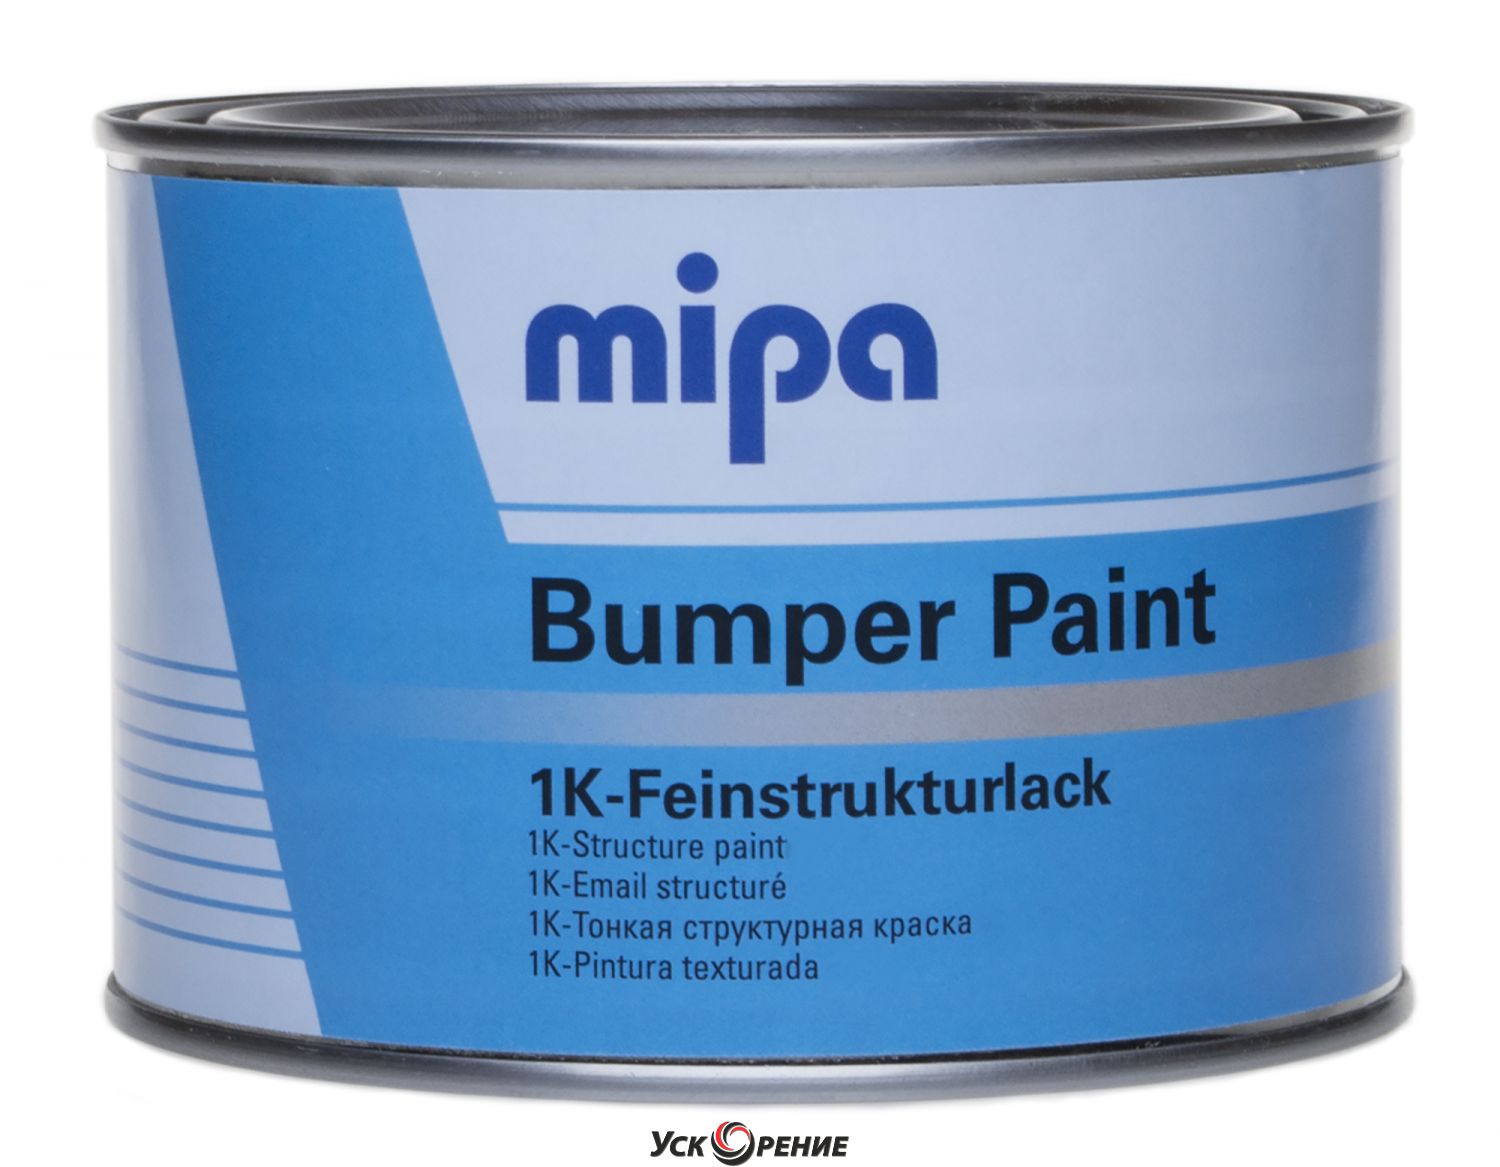 Купить краску 5 0. MIPA бамперная структурная краска черная (0,5л). Структурная краска MIPA 1k Bumper Paint, черная, 500 мл. Краска структурная для бампера MIPA Bumper Paint 0,5л. Серая. MIPA краска структурная для бамперов 0.5л черный.